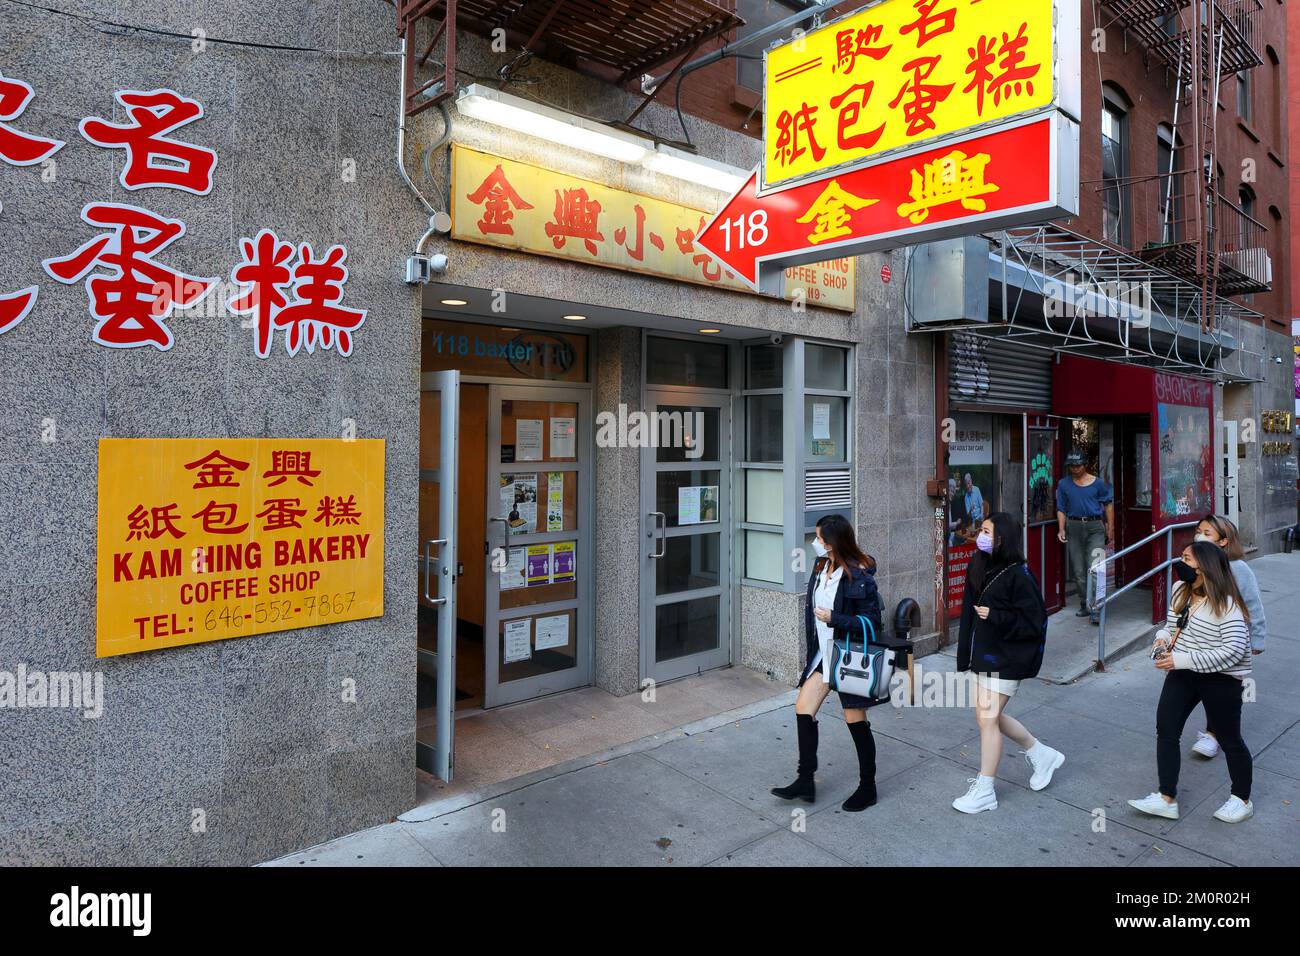 Kam Hing Coffee Shop 金興紙包蛋, 118 Baxter St, Nueva York, Nueva York, Nueva York, Nueva York, foto del escaparate de una antigua cafetería china en el barrio chino de Manhattan Foto de stock